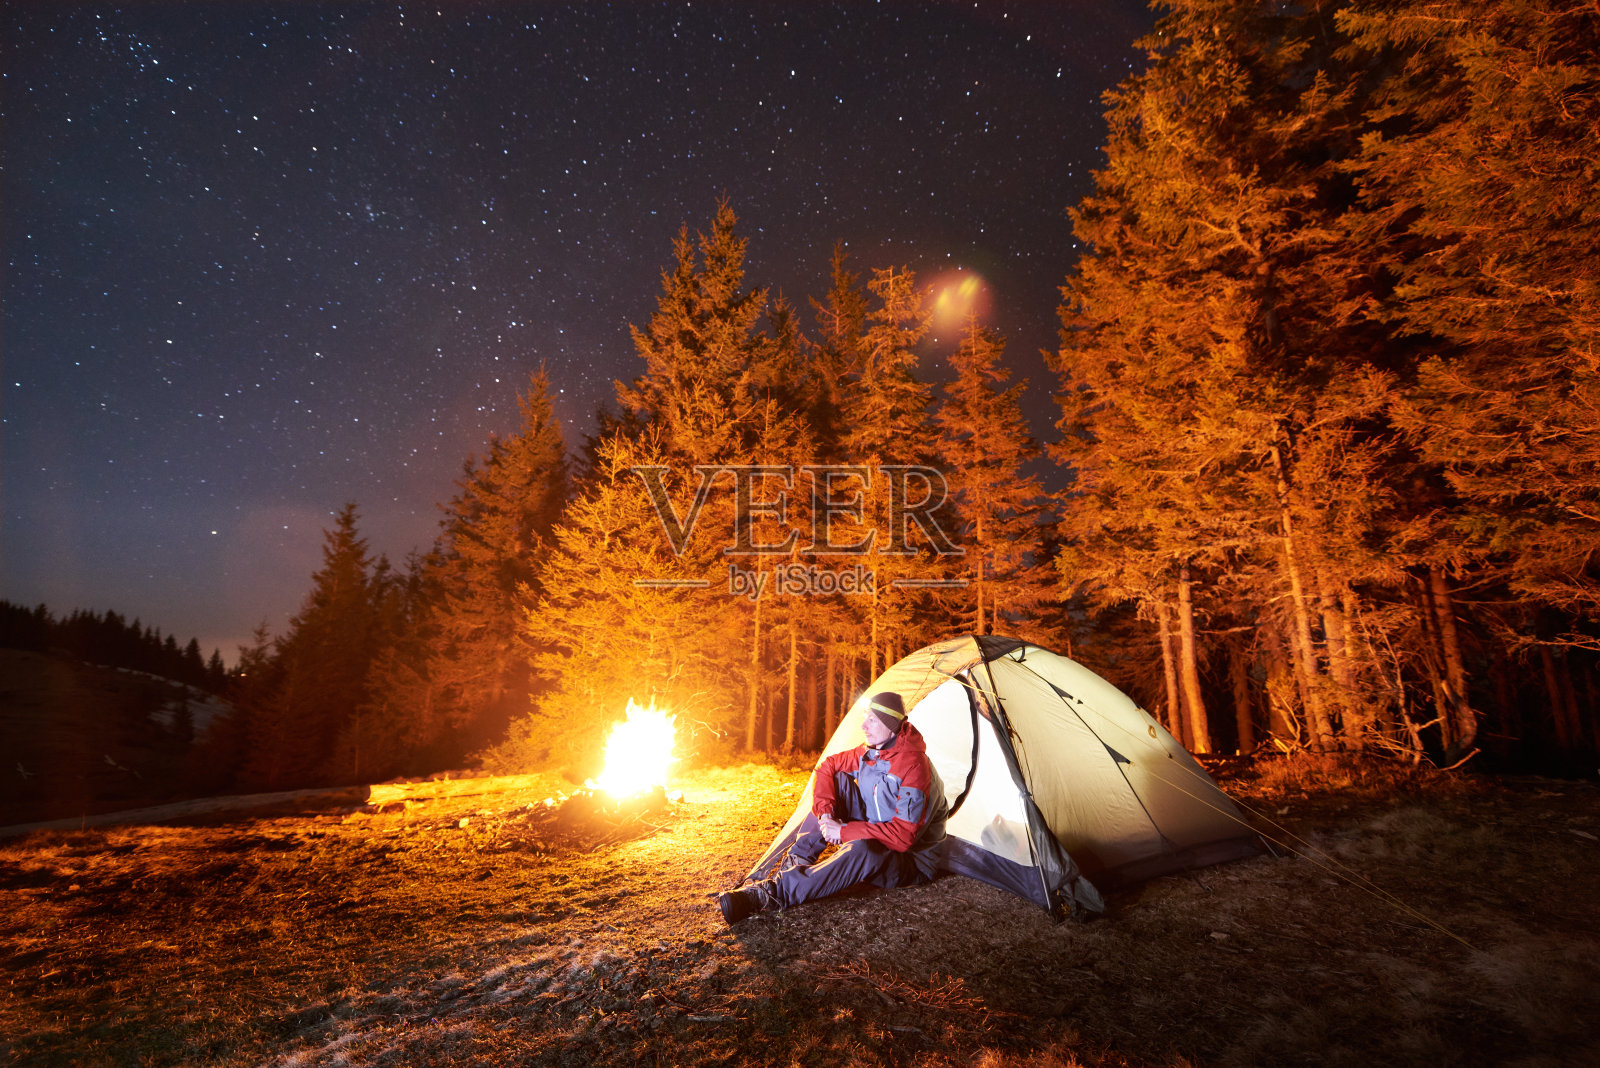 男游客晚上在森林附近的营地休息。一个人坐在篝火和帐篷附近，在美丽的夜空下满是星星，欣赏夜景照片摄影图片